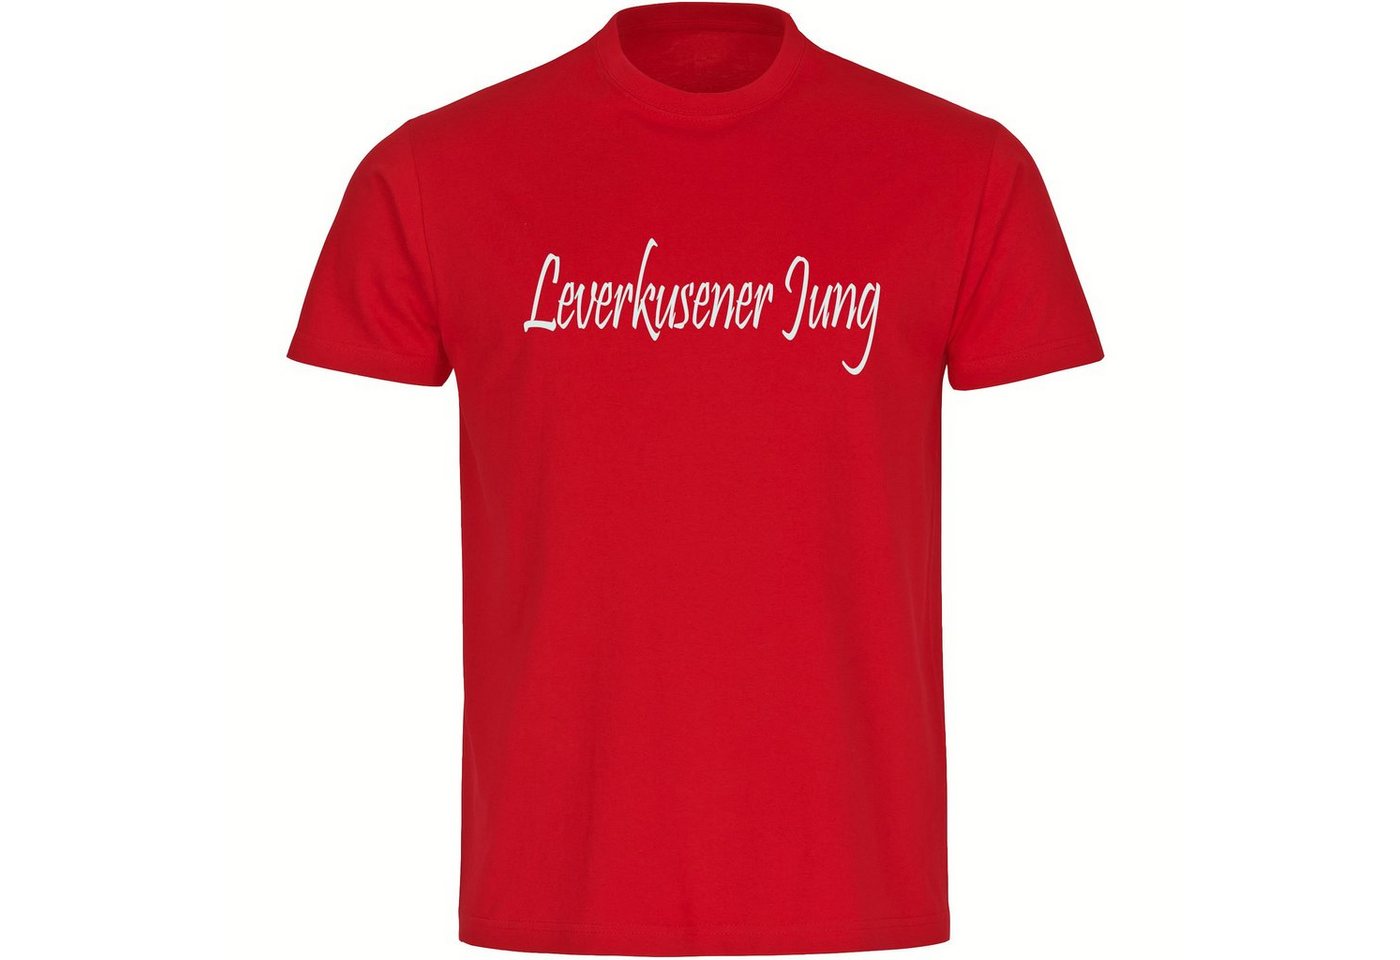 multifanshop T-Shirt Herren Leverkusen - Leverkusener Jung - Männer von multifanshop